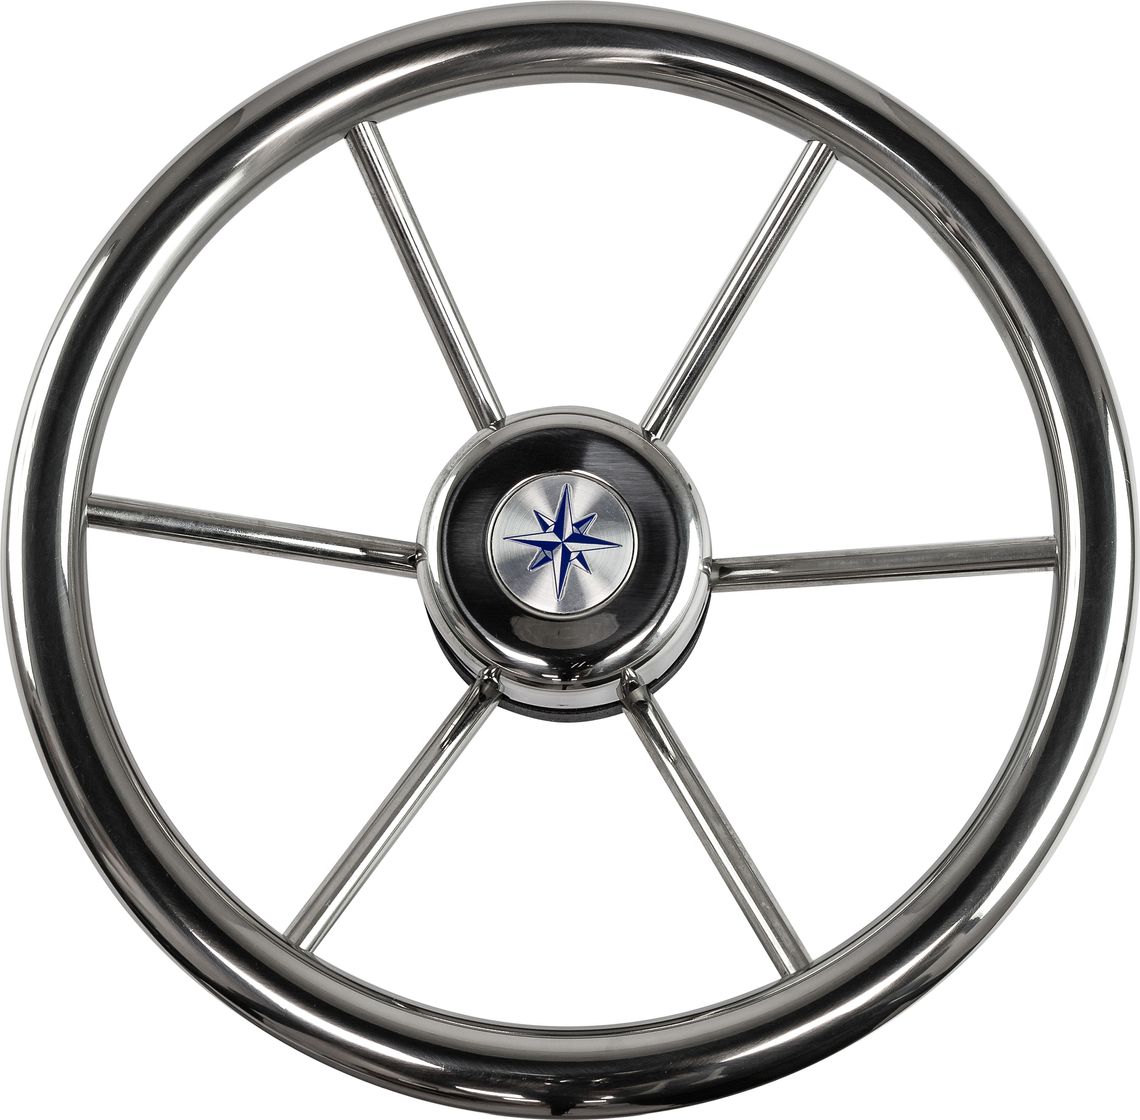 Рулевое колесо LEADER INOX нержавеющий обод серебряные спицы д. 320 мм VN7332-22 колесо для одноколесной тачки variant 3 25 3 00 8 к99 1с камерное с подшипником 16 мм обод металл